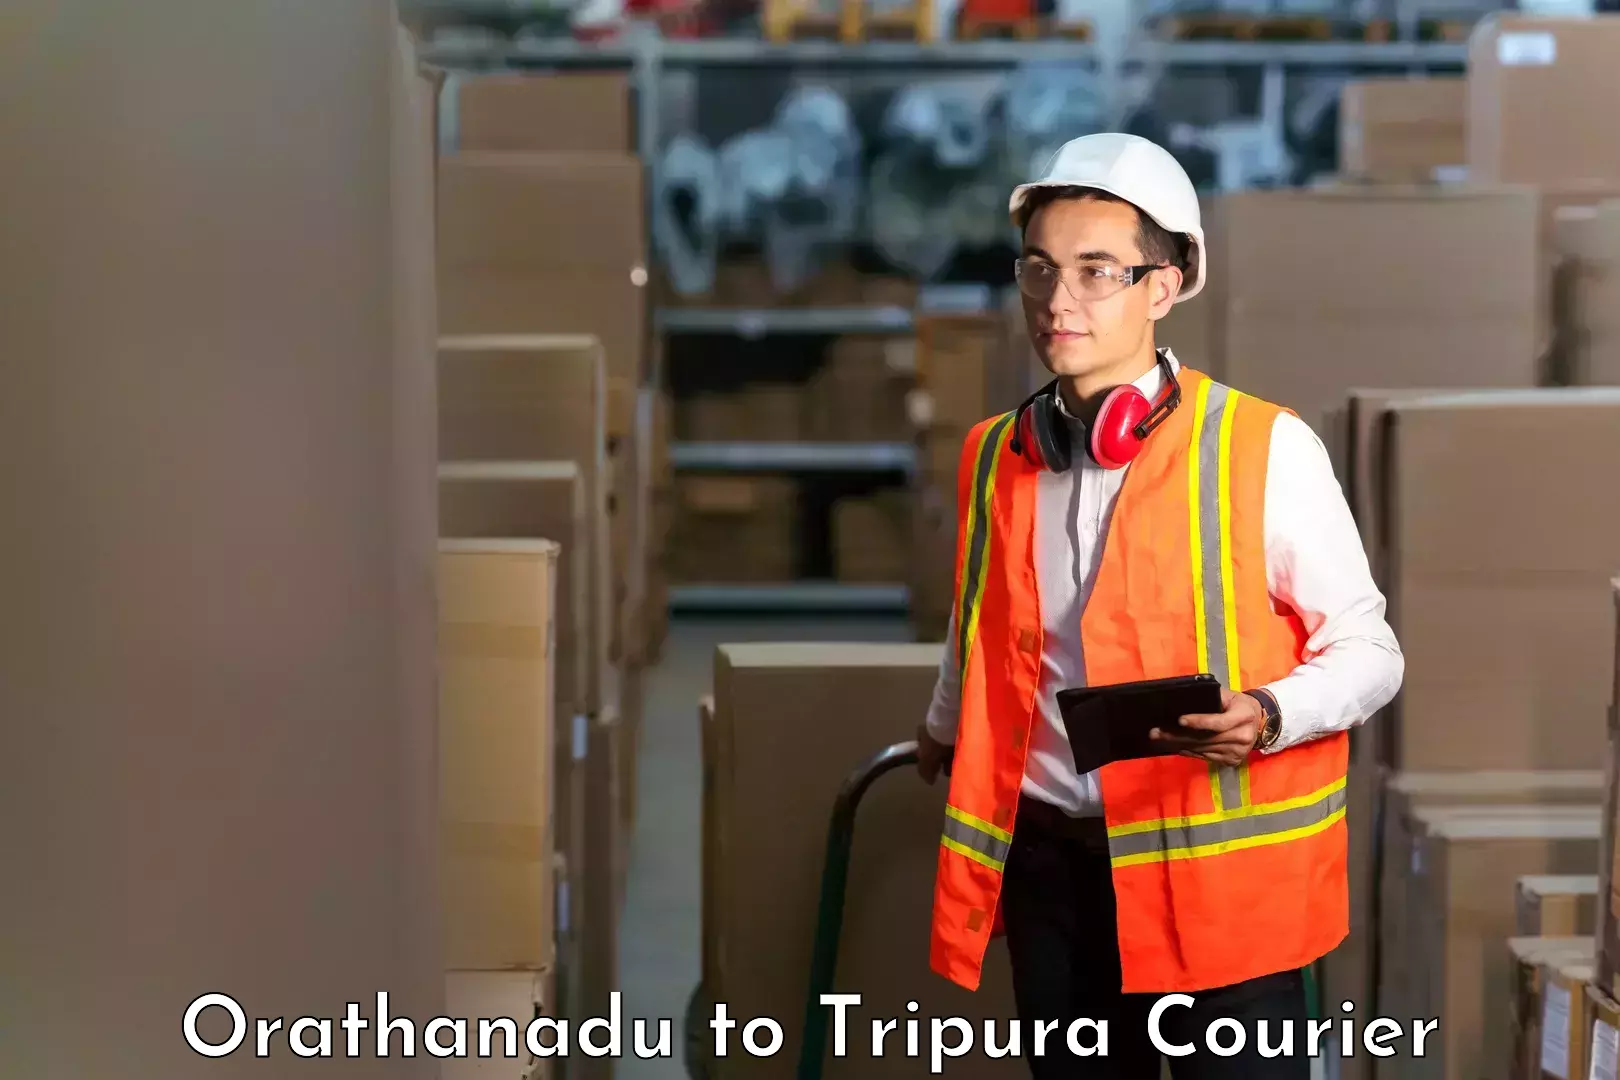 Speedy delivery service Orathanadu to North Tripura